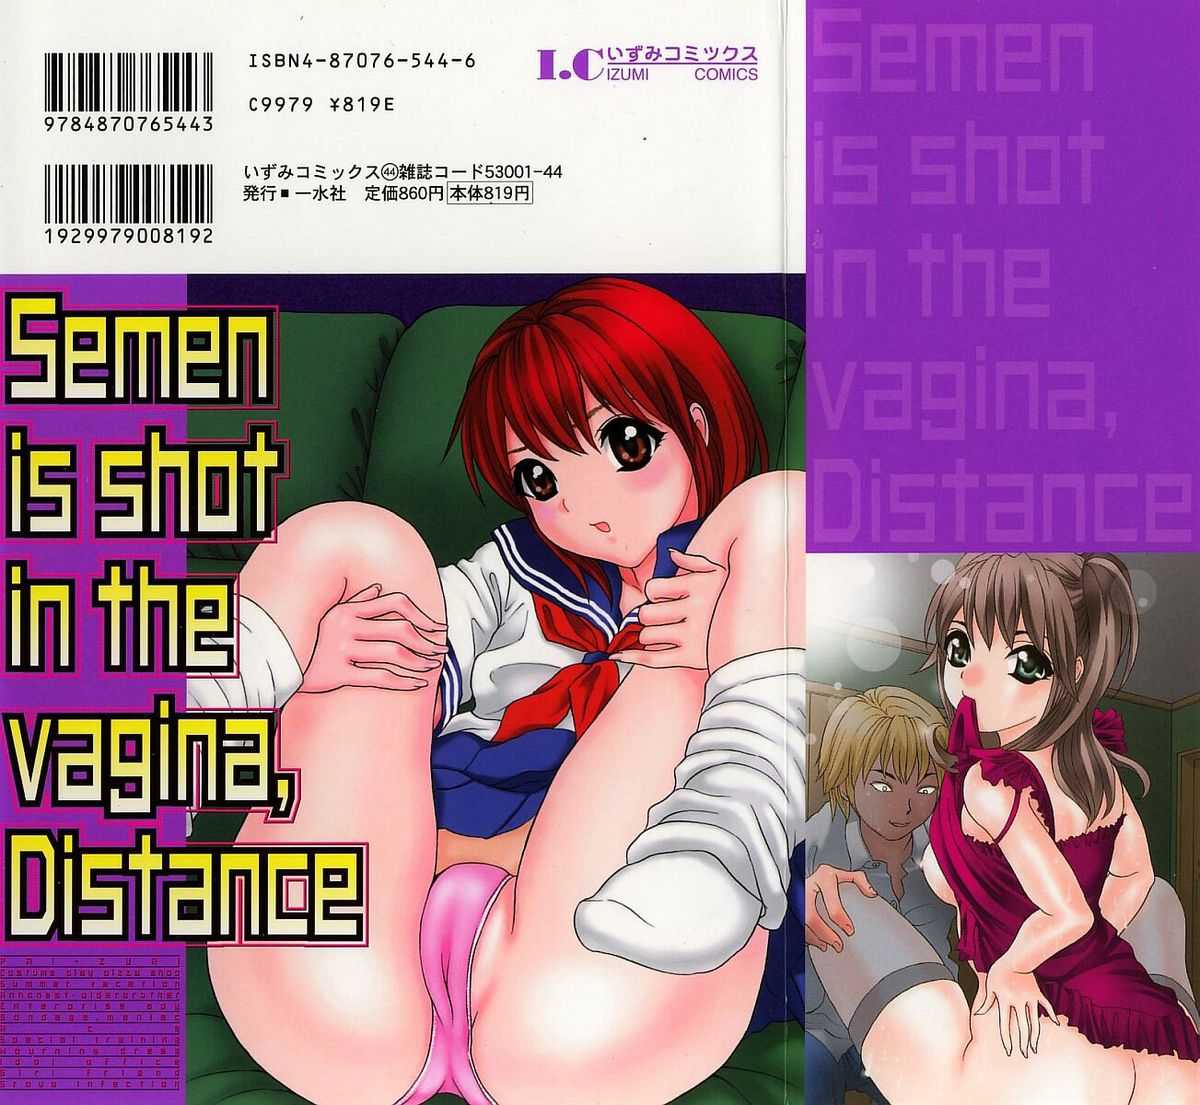 [Urara Hikaru] Nakadashi Distance (Semen is shot in the vagina, Distance) [宇羅々ひかる] 中出しDistance